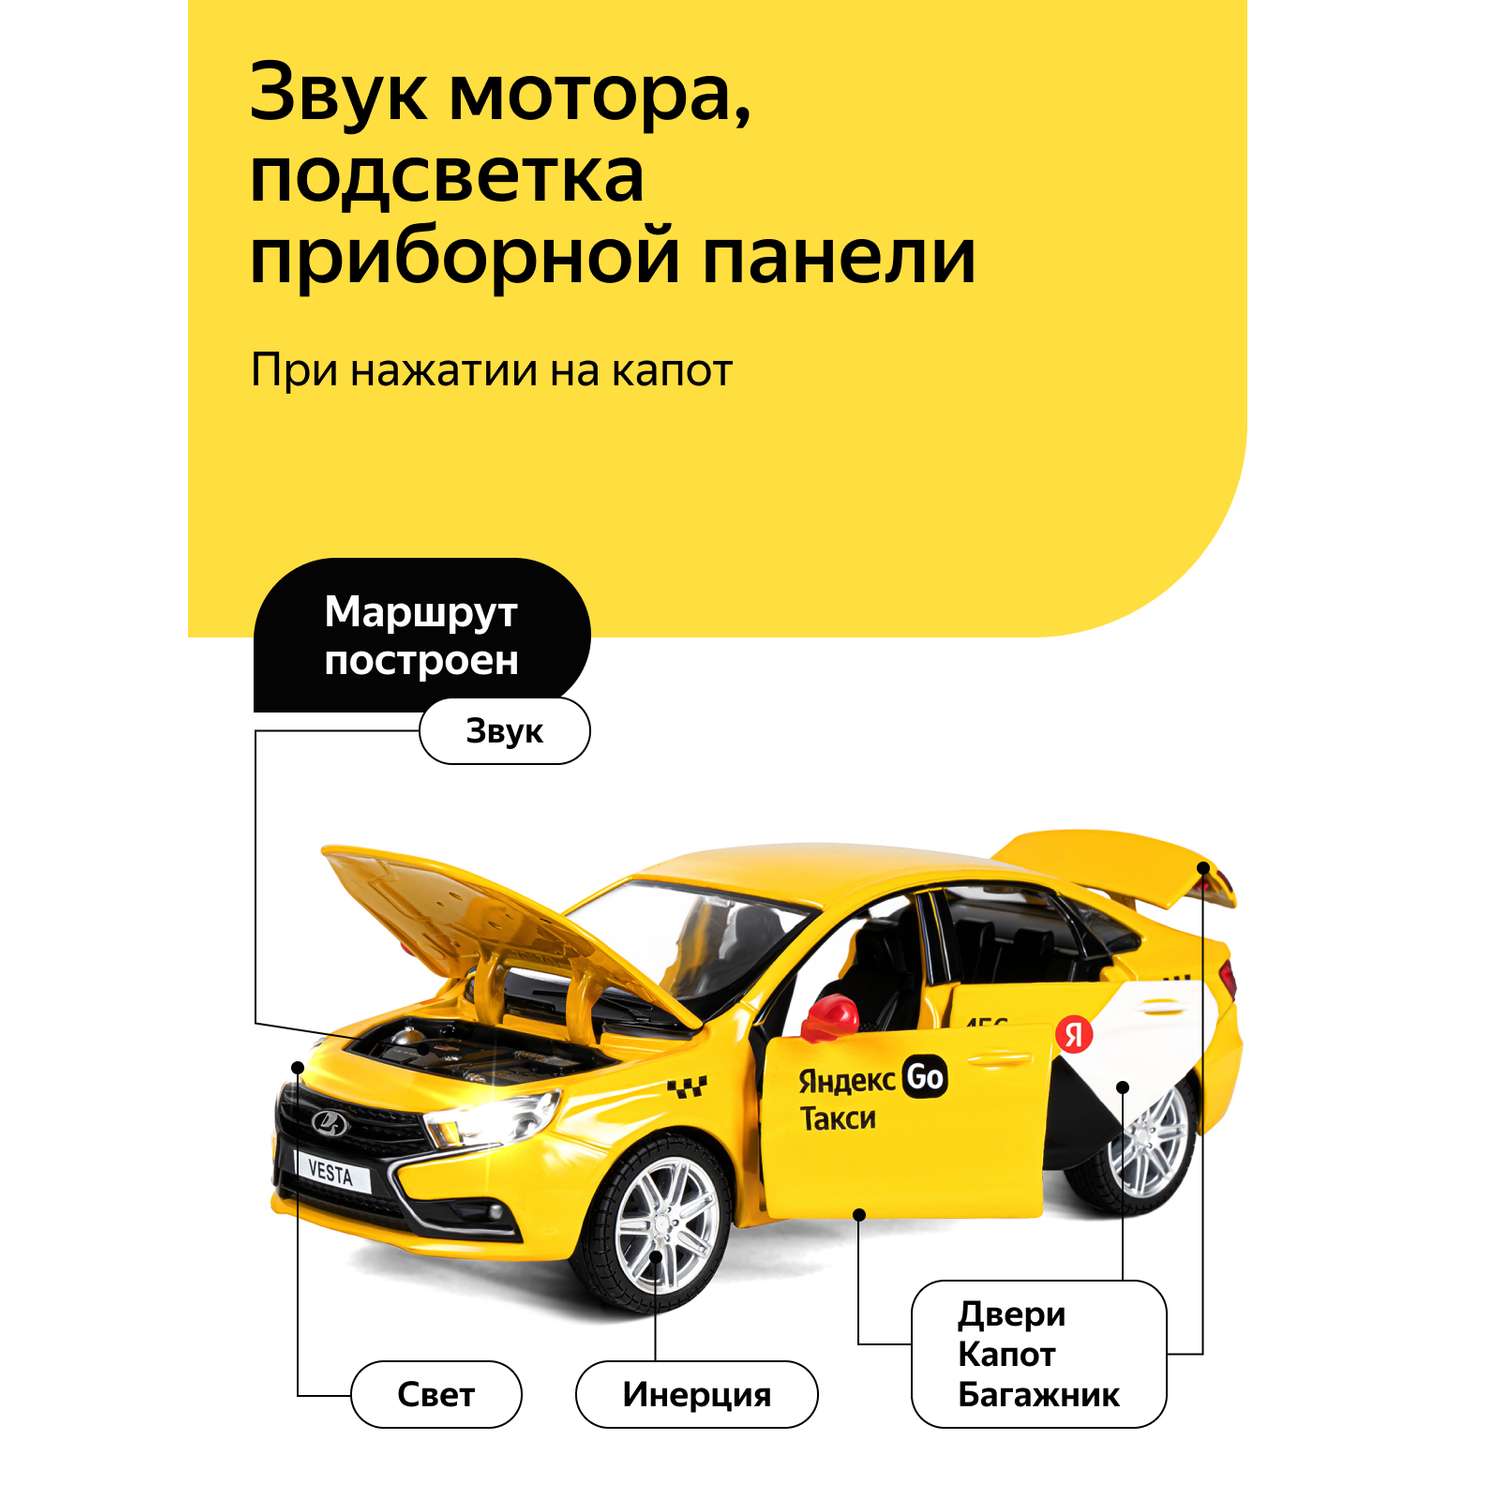 Машинка металлическая Яндекс GO игрушка детская 1:24 Lada Vesta желтый инерционная JB1251345/Яндекс GO - фото 2